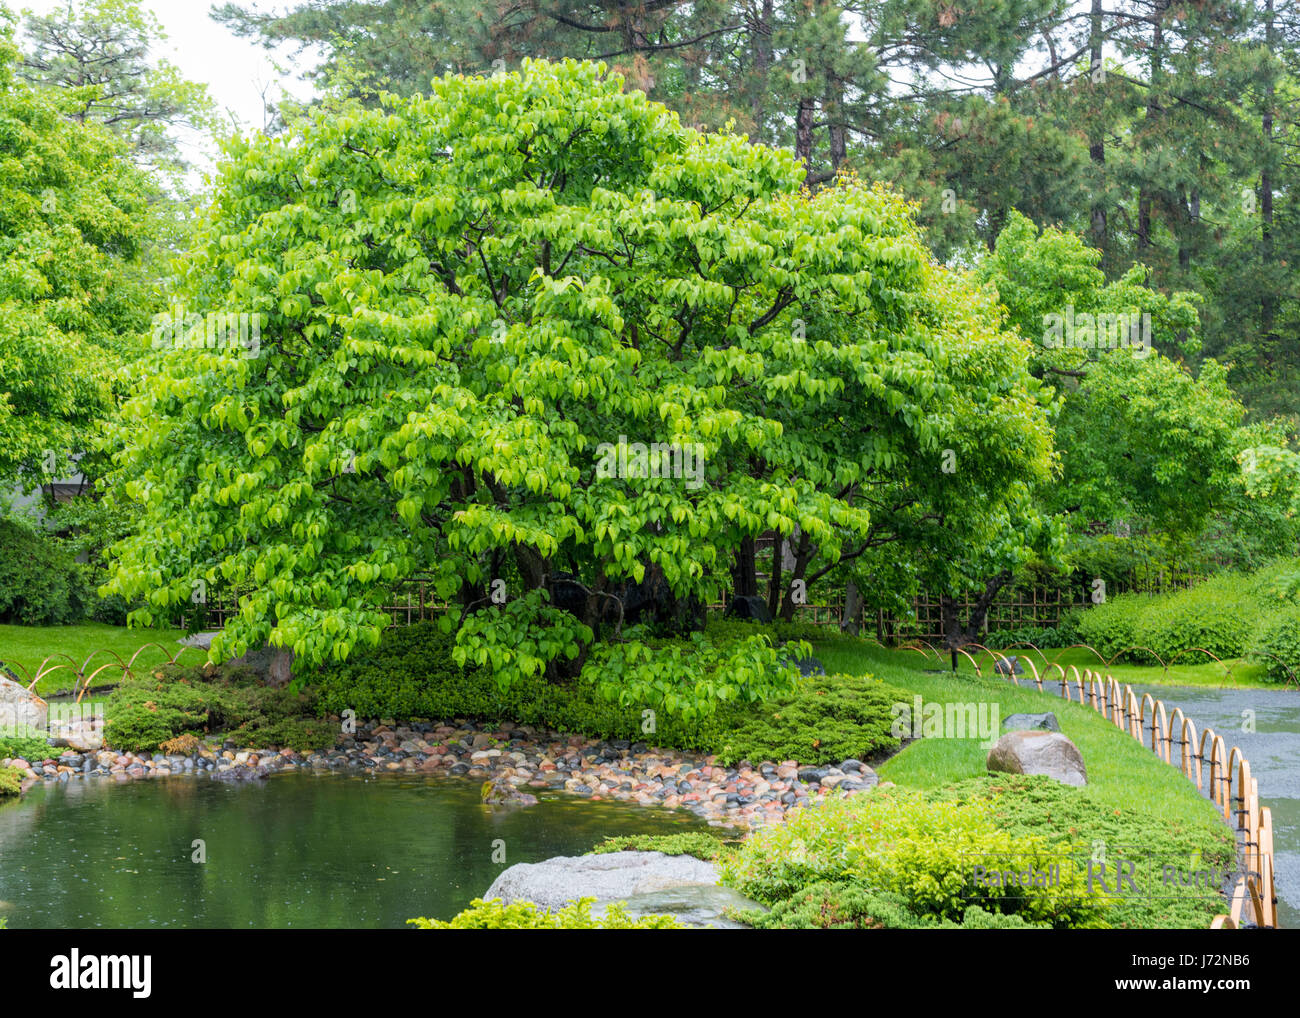 Un buisson pouvant atteindre 12-15 pieds d'arbres à côté d'un étang dans un jardin japonais Banque D'Images